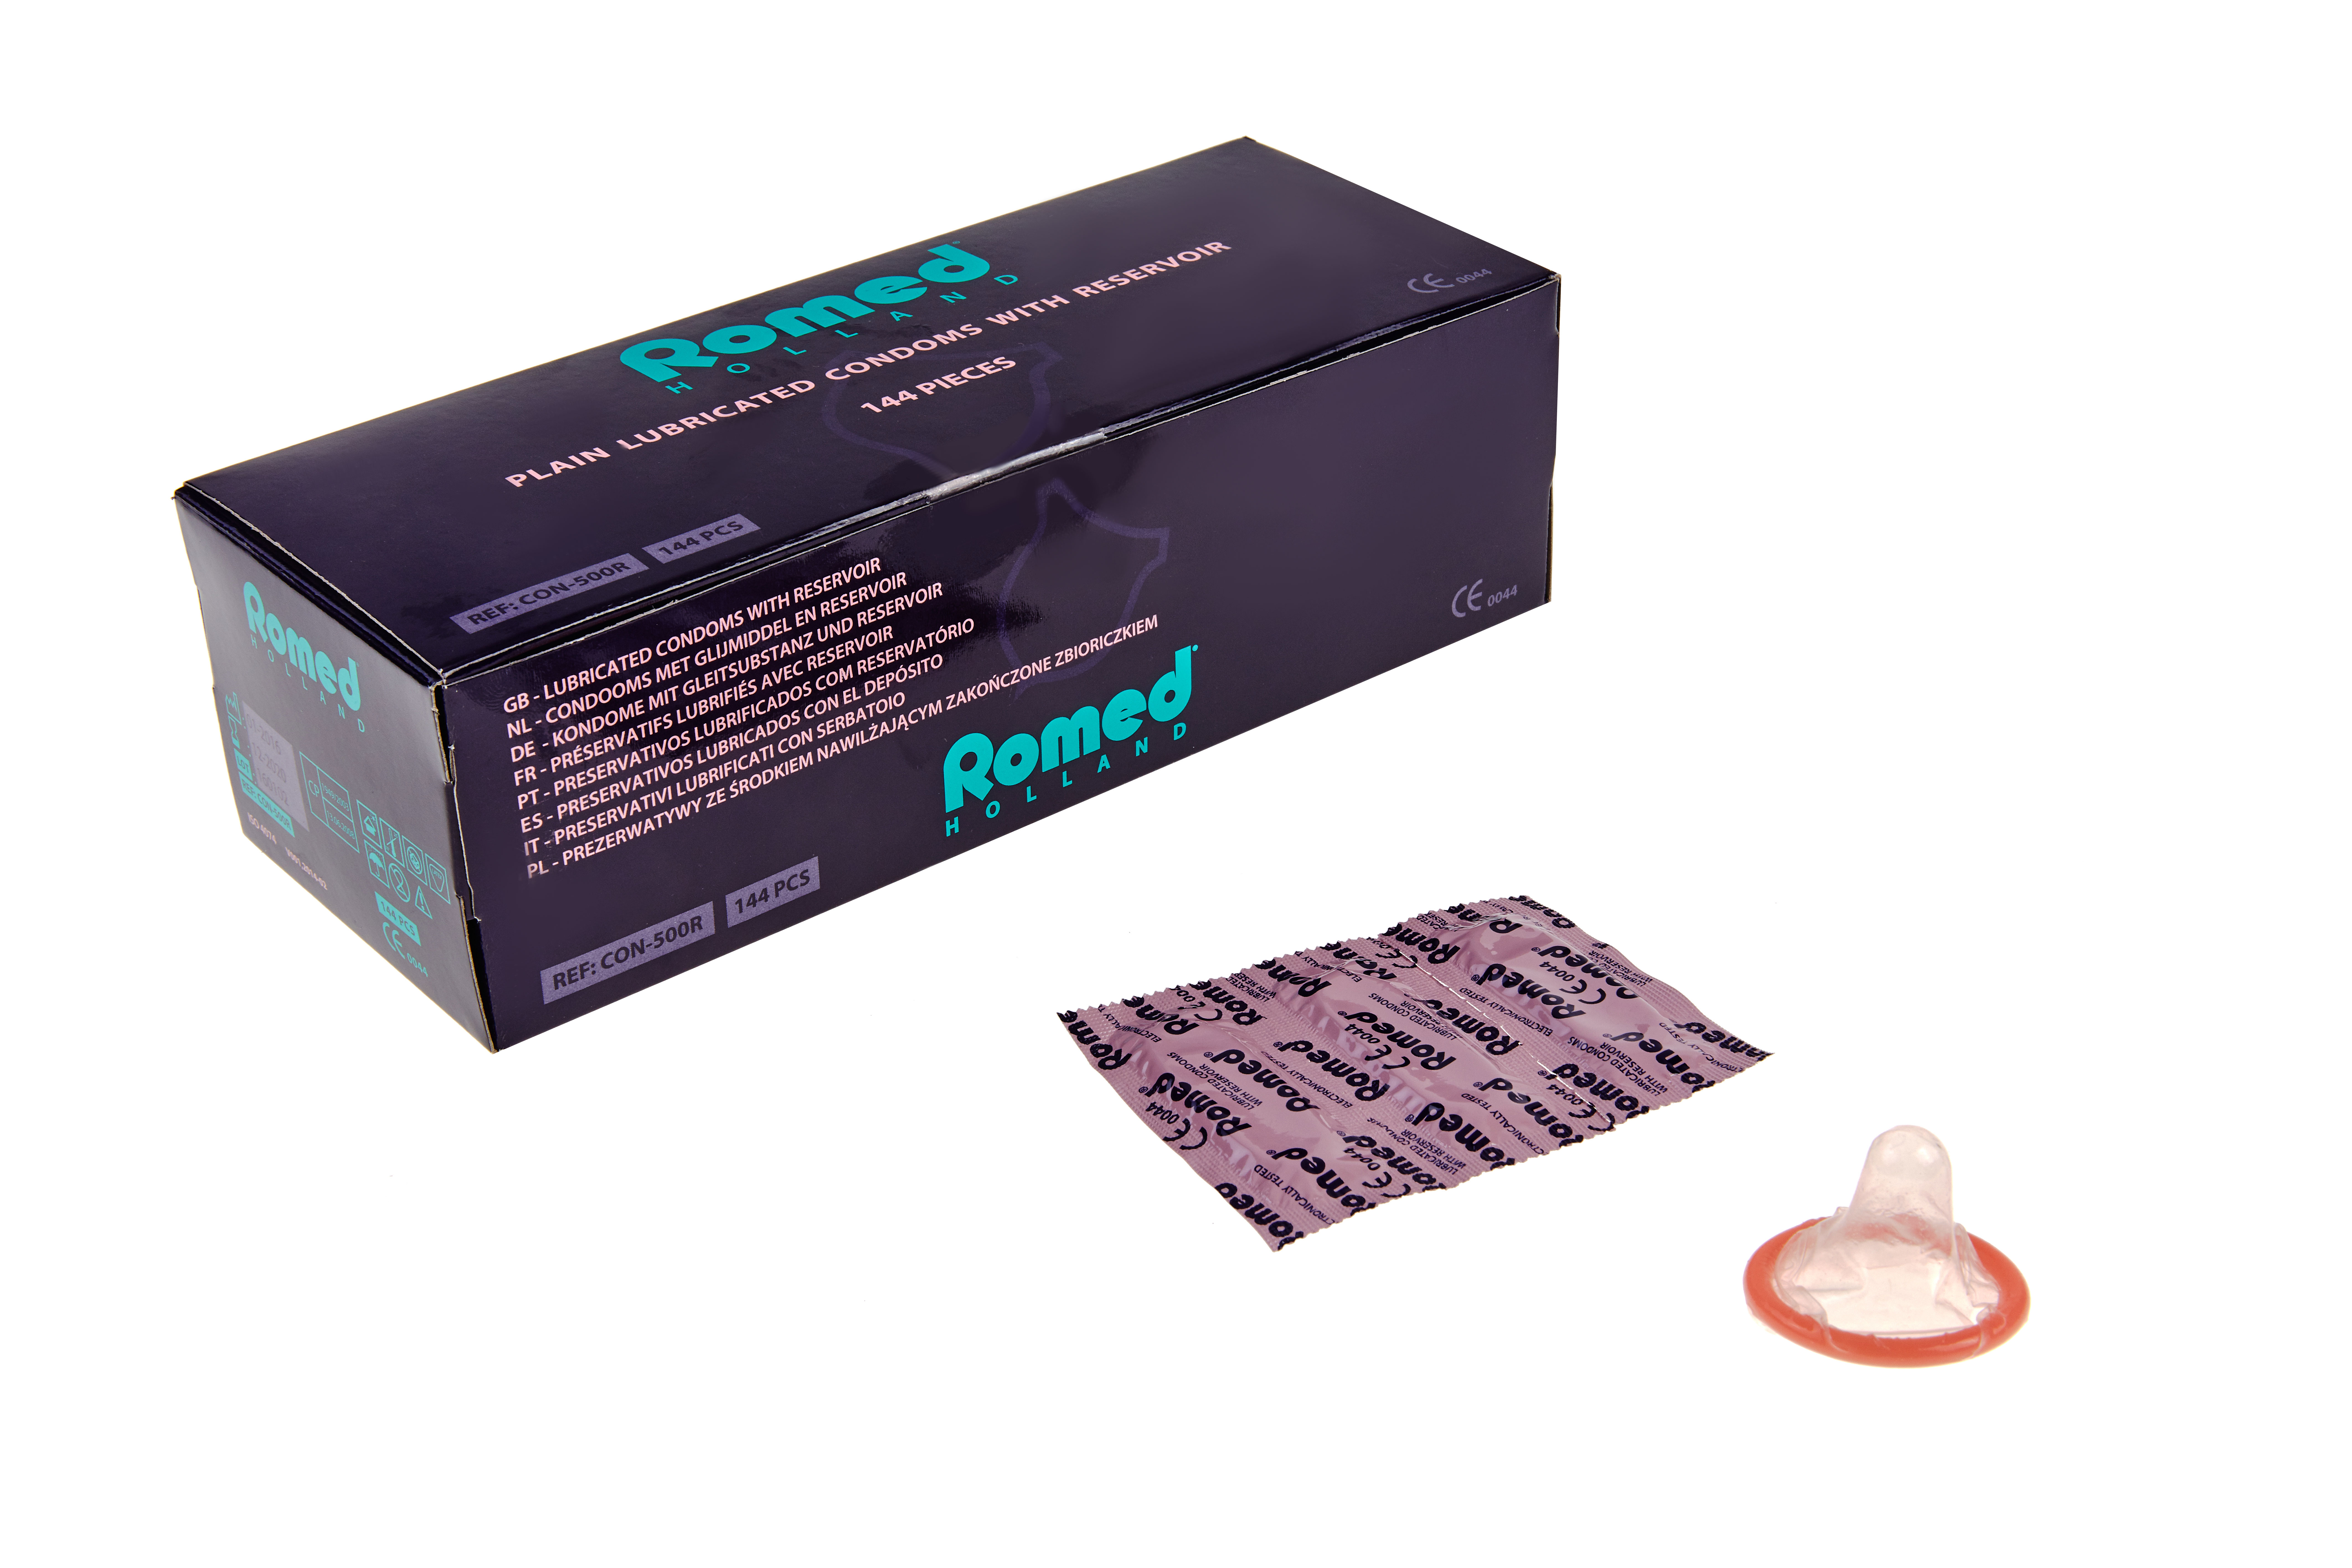 CON-500R Romed Kondome verpackt in Streifen zu 3 Stück, 48 Streifen = 144 Stück in einer Schachtel (= 1 Gros), 50 x 144 Stück = 7.200 Stück im Karton.